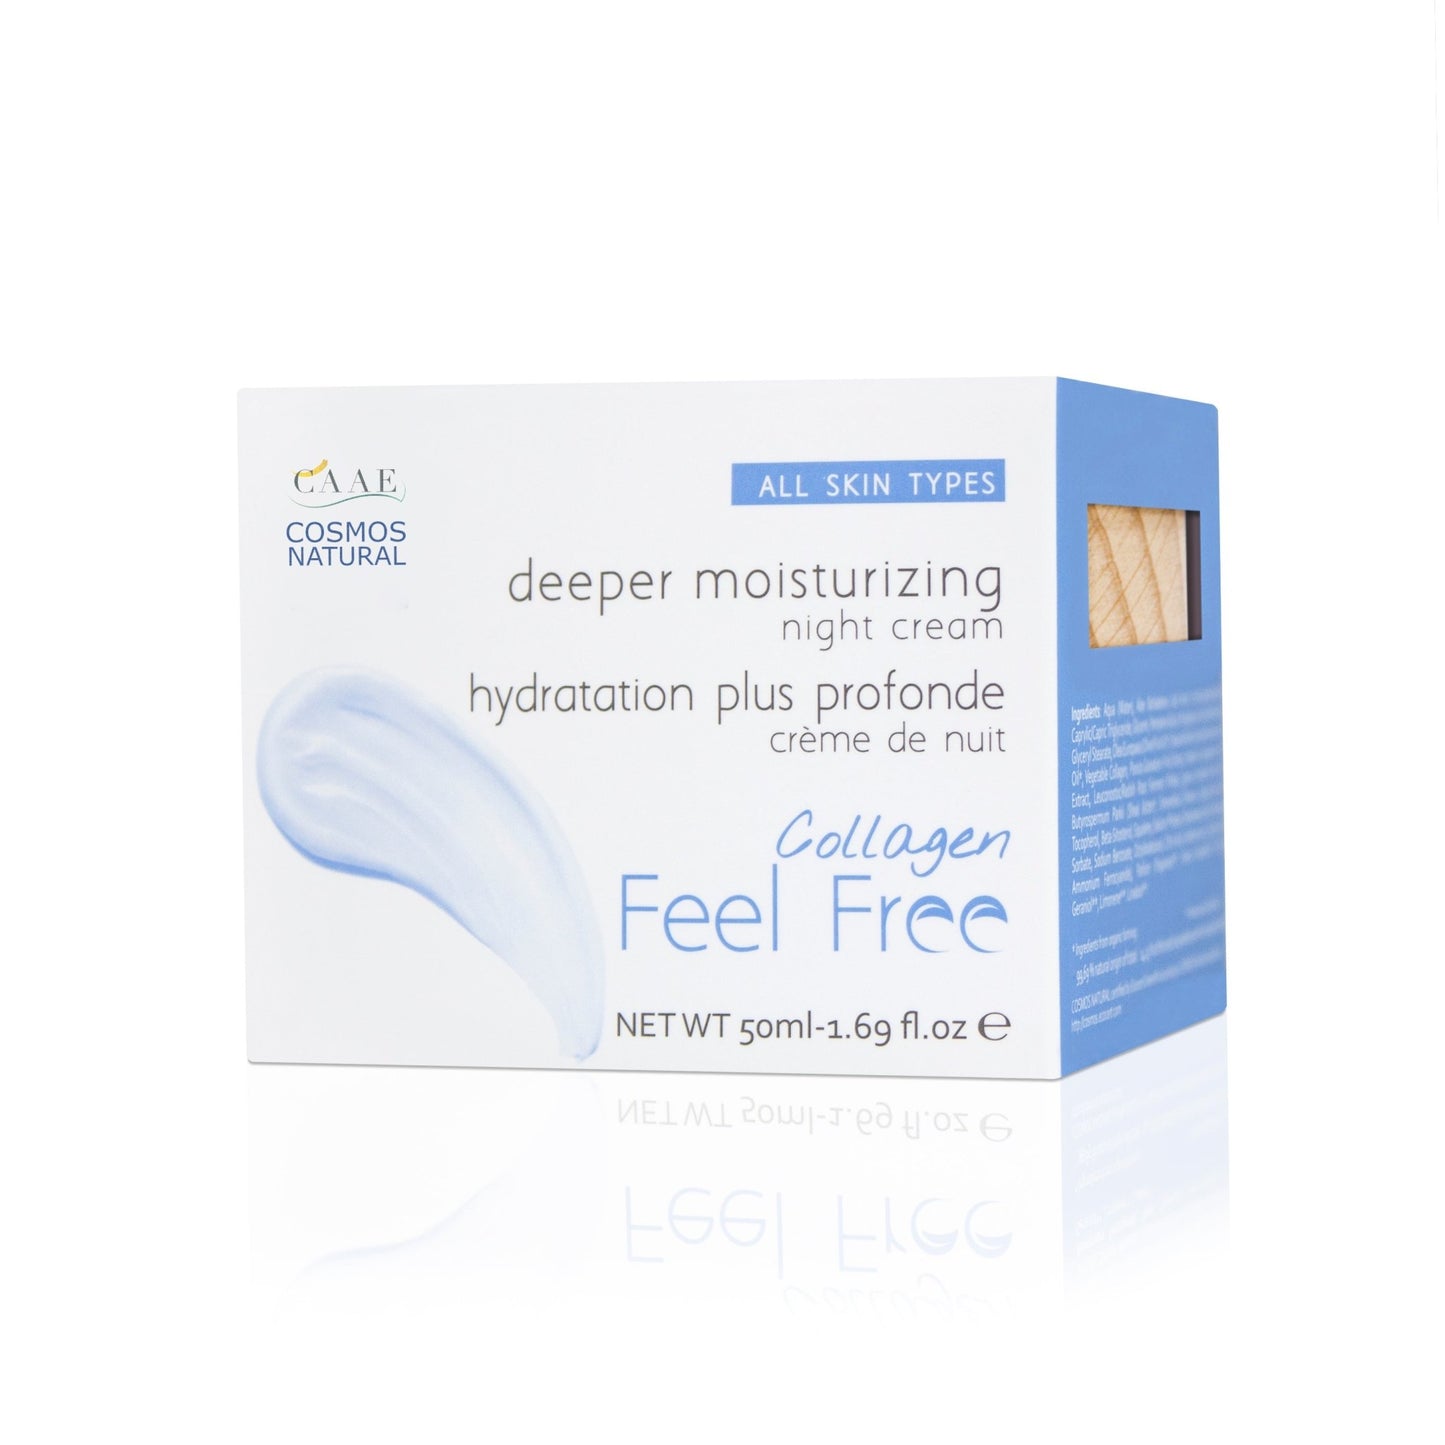 UUTUUS! Feel Free Collagen Deeper Moisturizing Cream - kimmoisuutta lisäävä ja tehokkaasti kosteuttava hoitovoide, 50ml - 4Organic Store (Luomukaista)